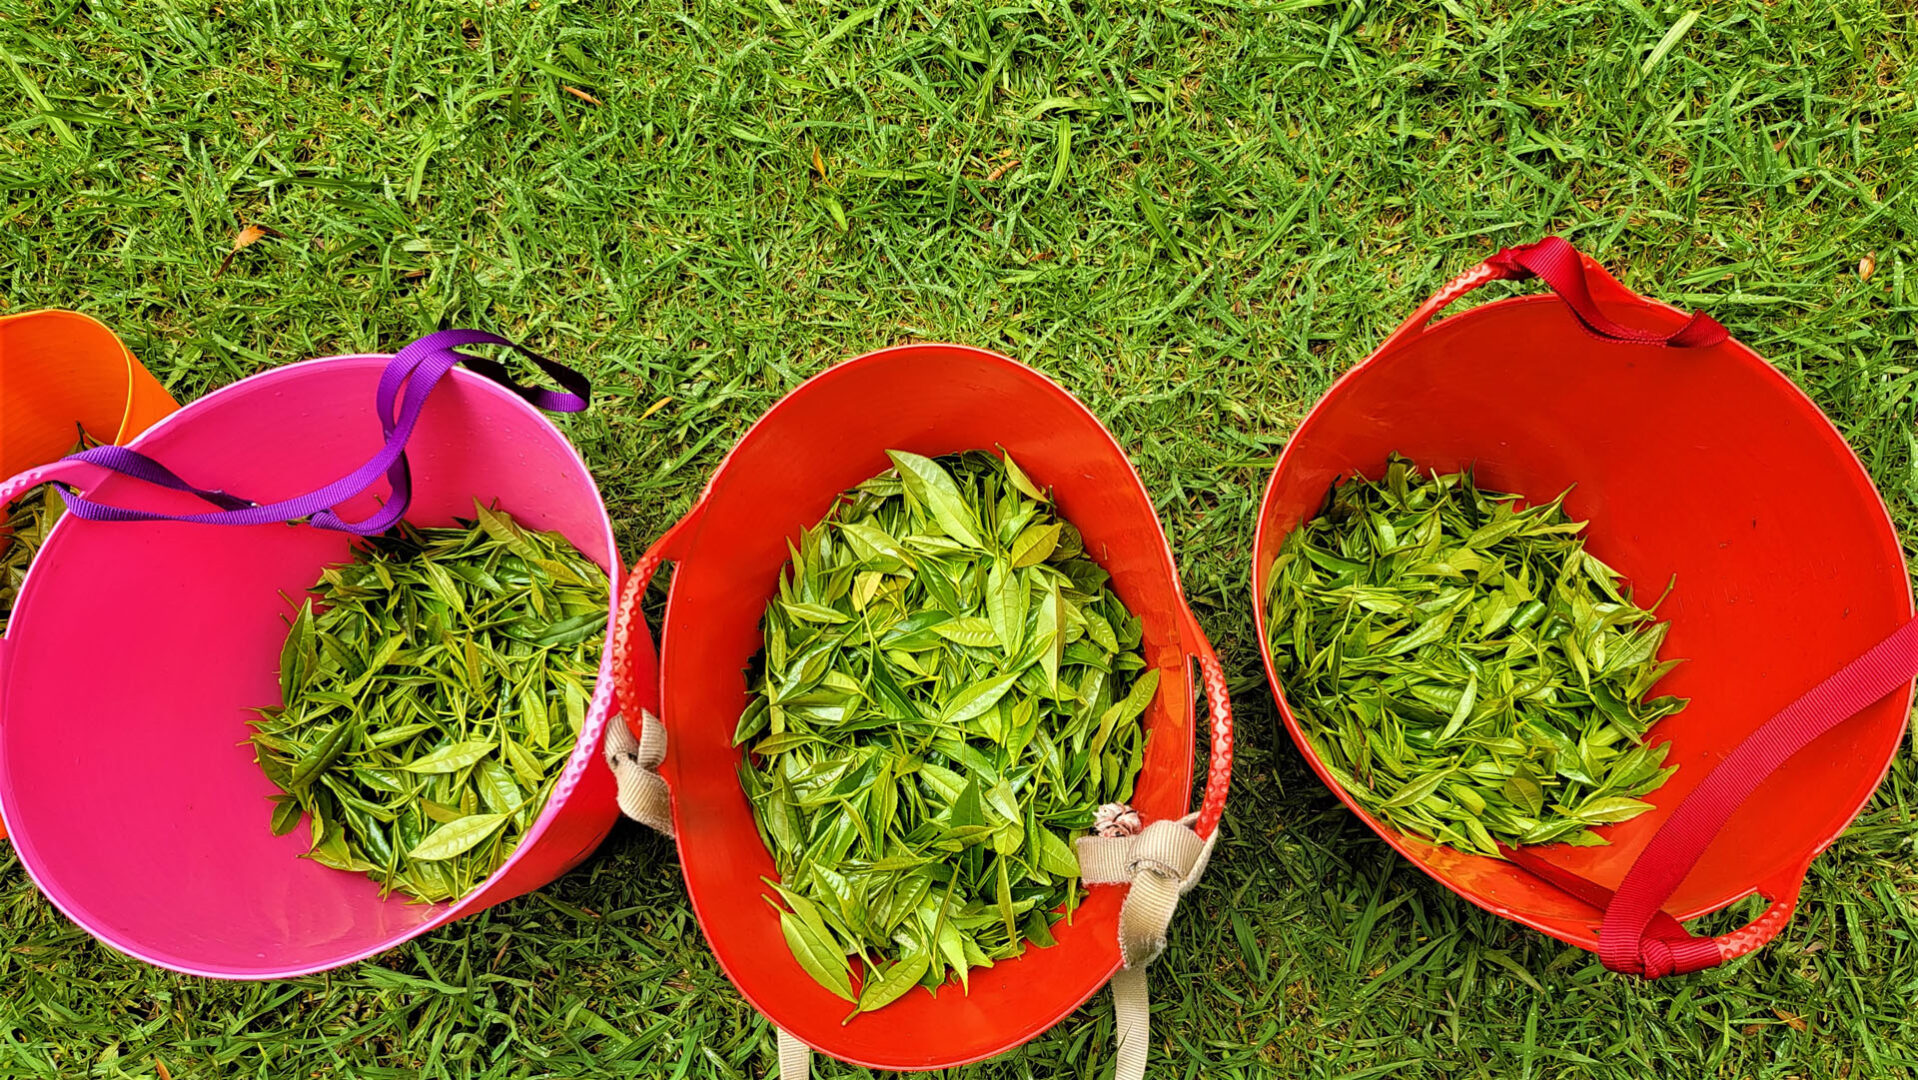 Tea leaves in harvest baskets,14 lbs. total